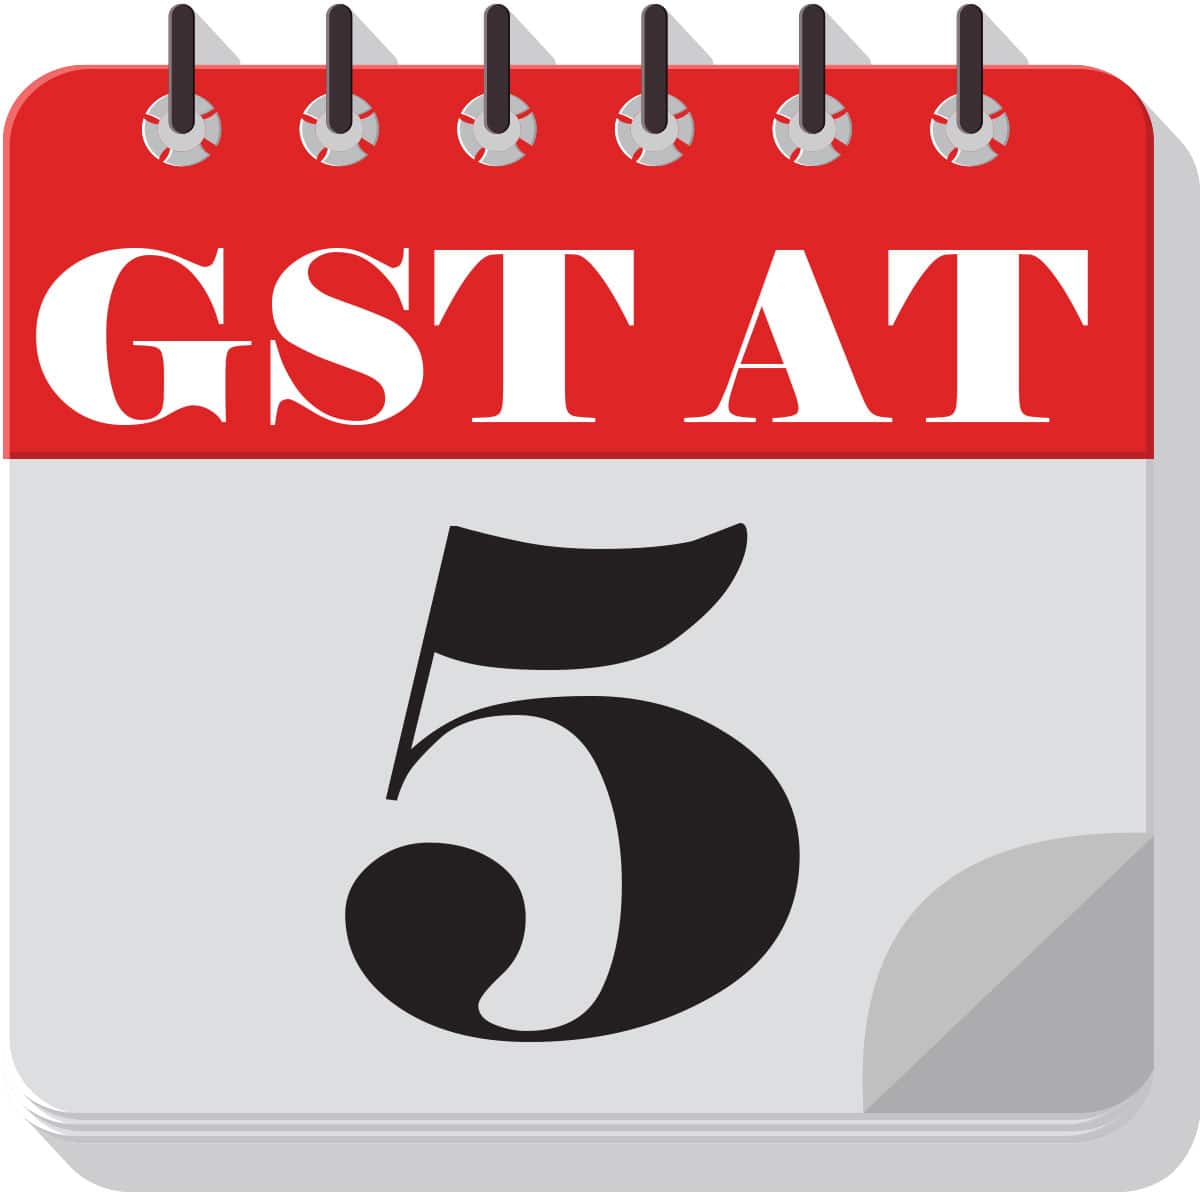 logo-GST-at-5-1